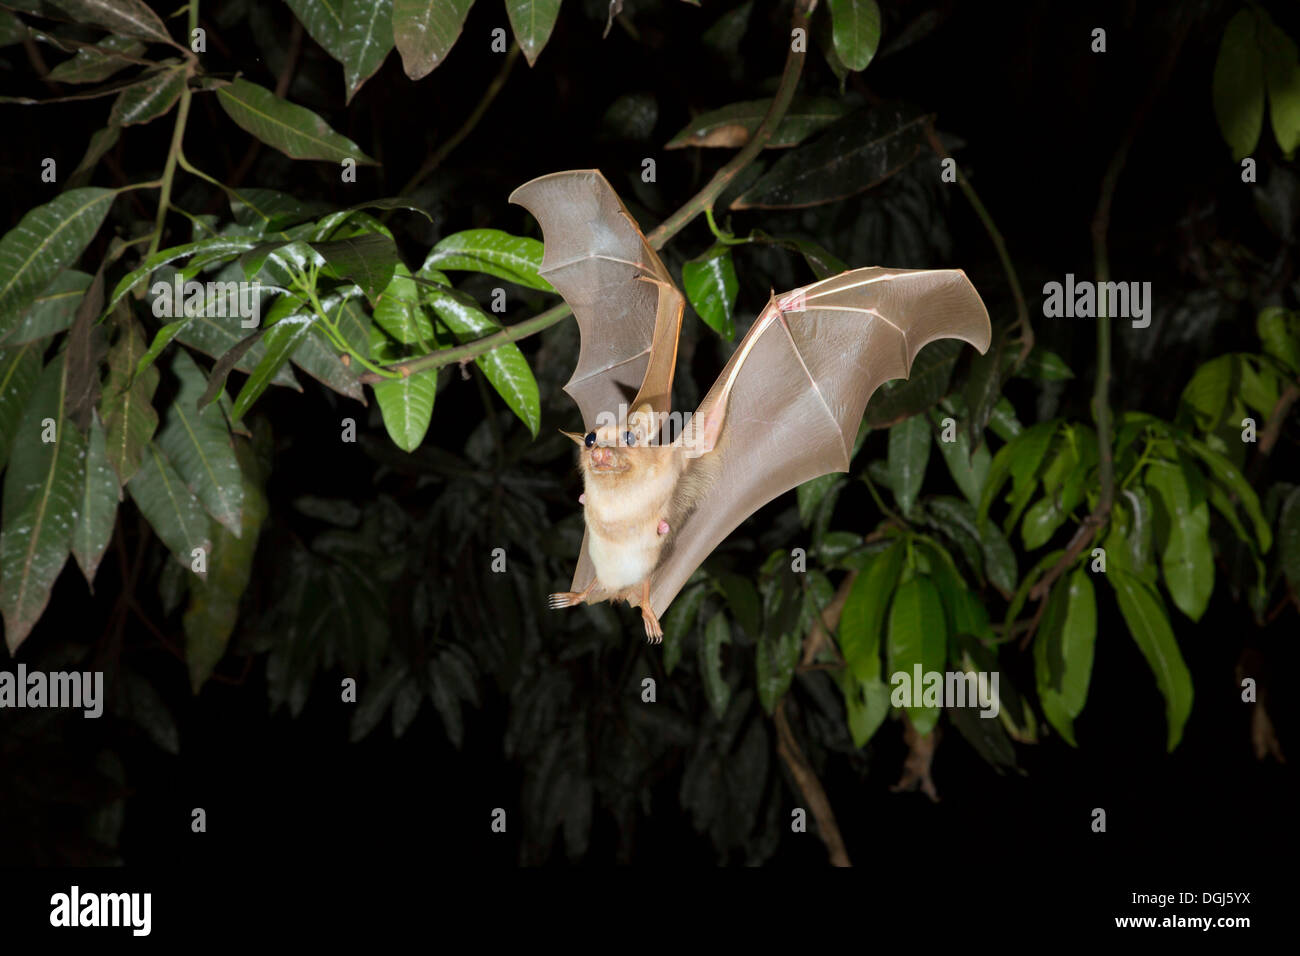 Female Gambian epauletted fruit bat (Epomophorus gambianus) flying at night, Ghana. Stock Photo